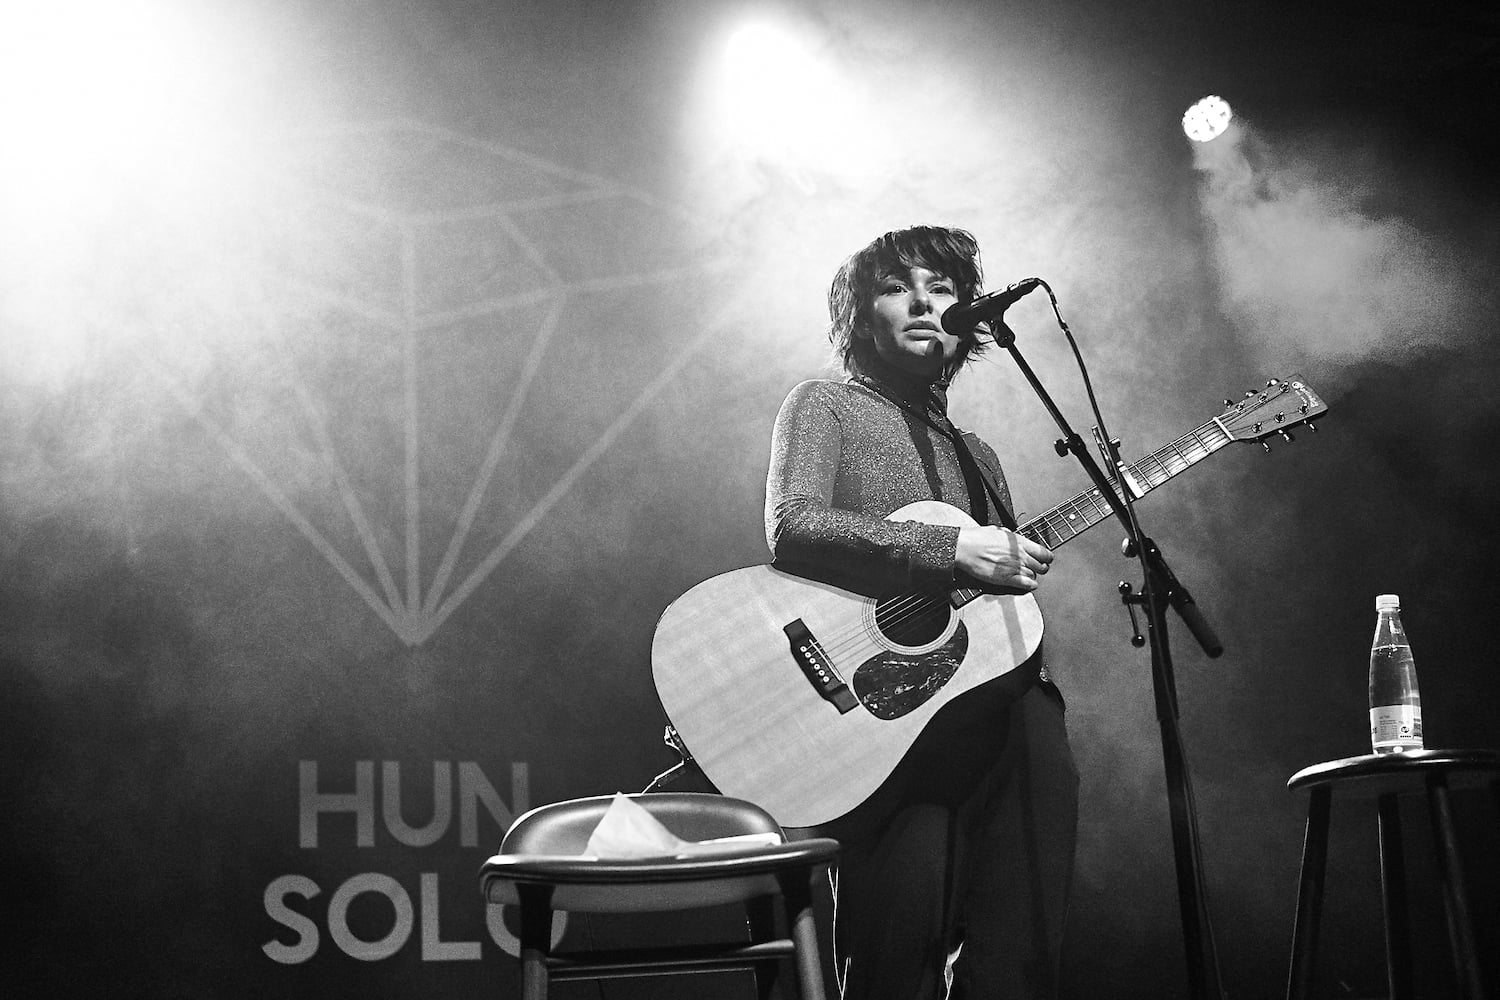 Annika Aakjær er en af de mange kunstenere, der har optrådt ved HUN SOLO koncerter. Foto: Kurt Christensen